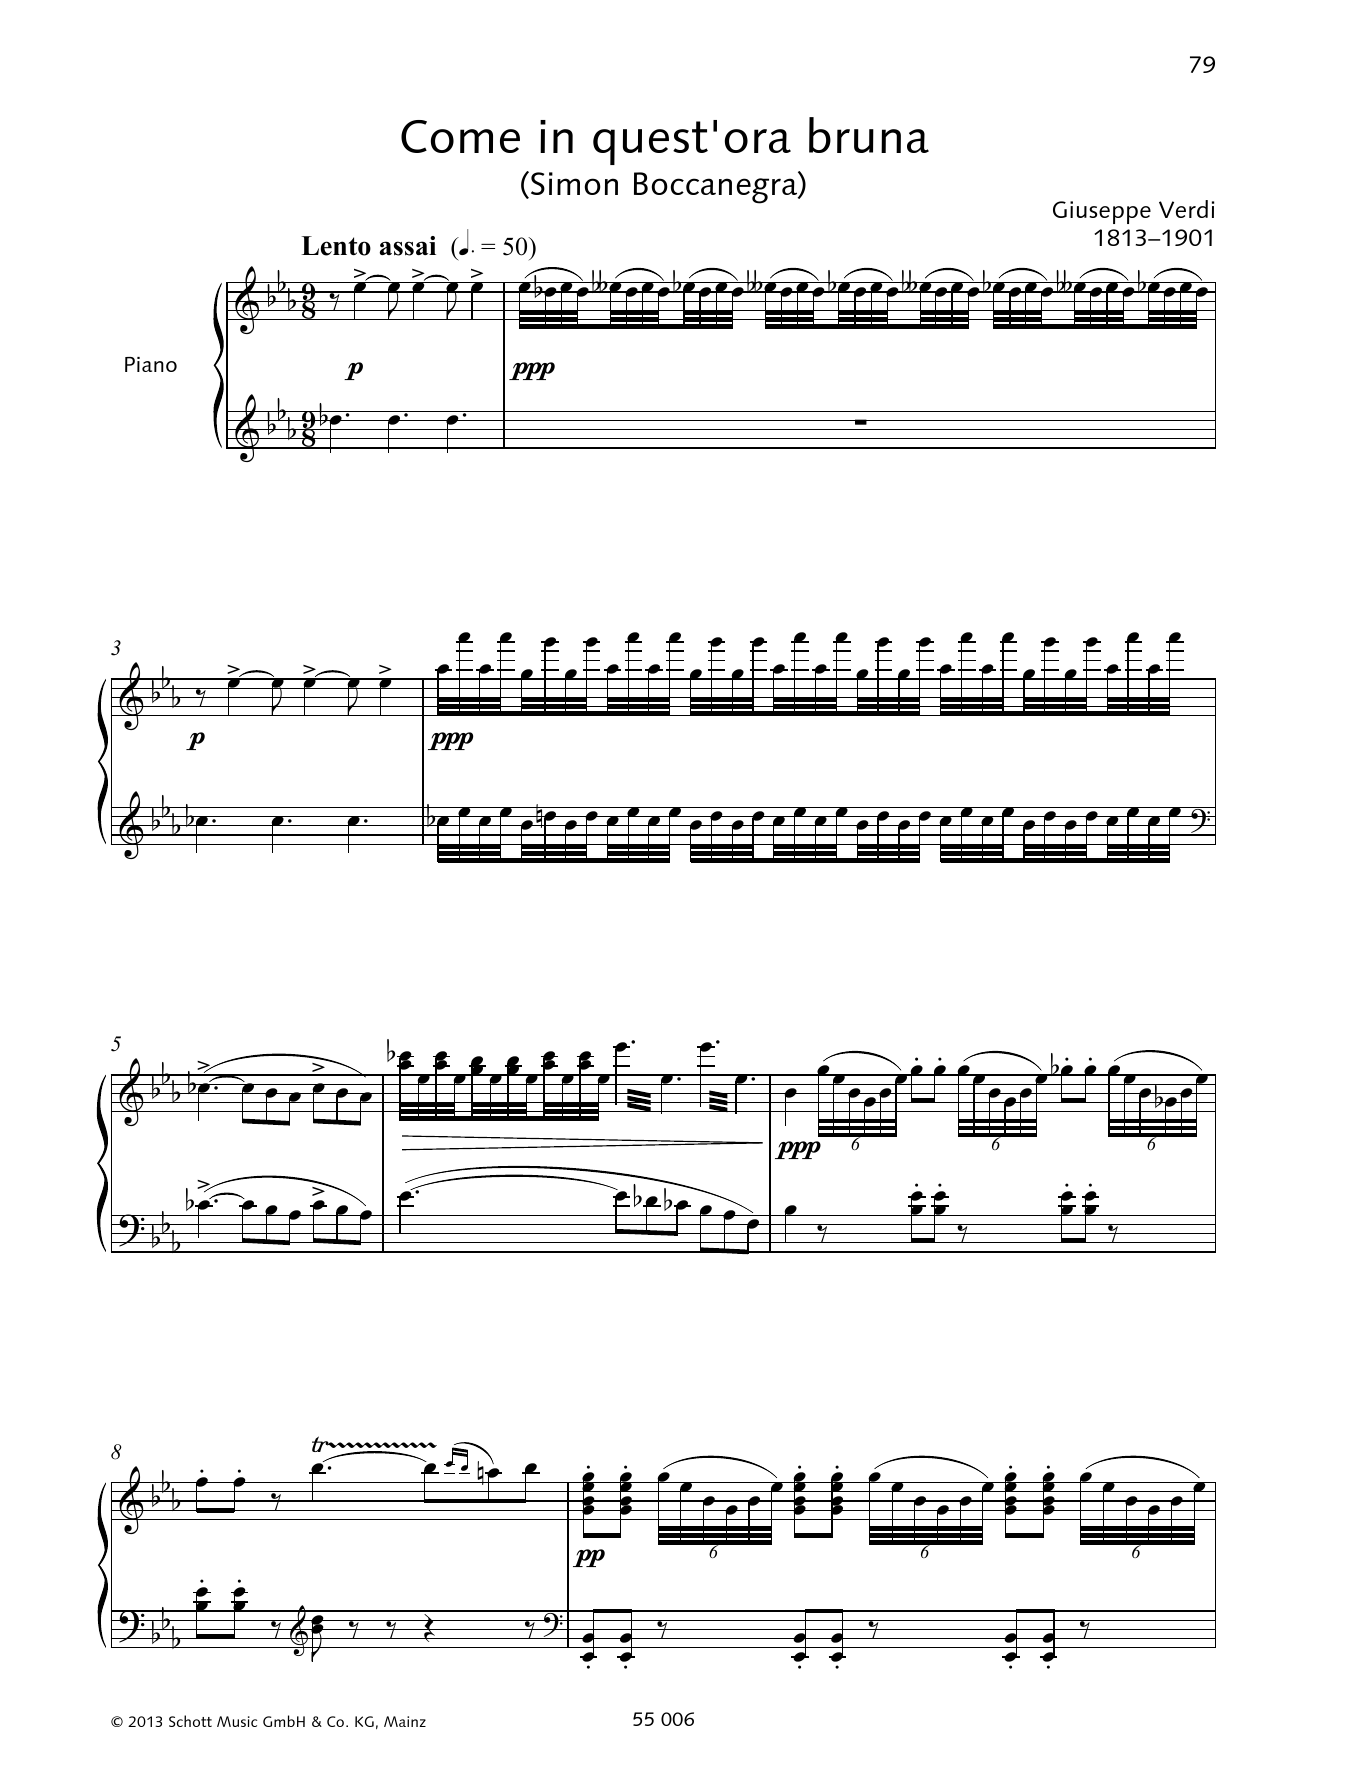 Download Giuseppe Verdi Come in quest'ora bruna Sheet Music